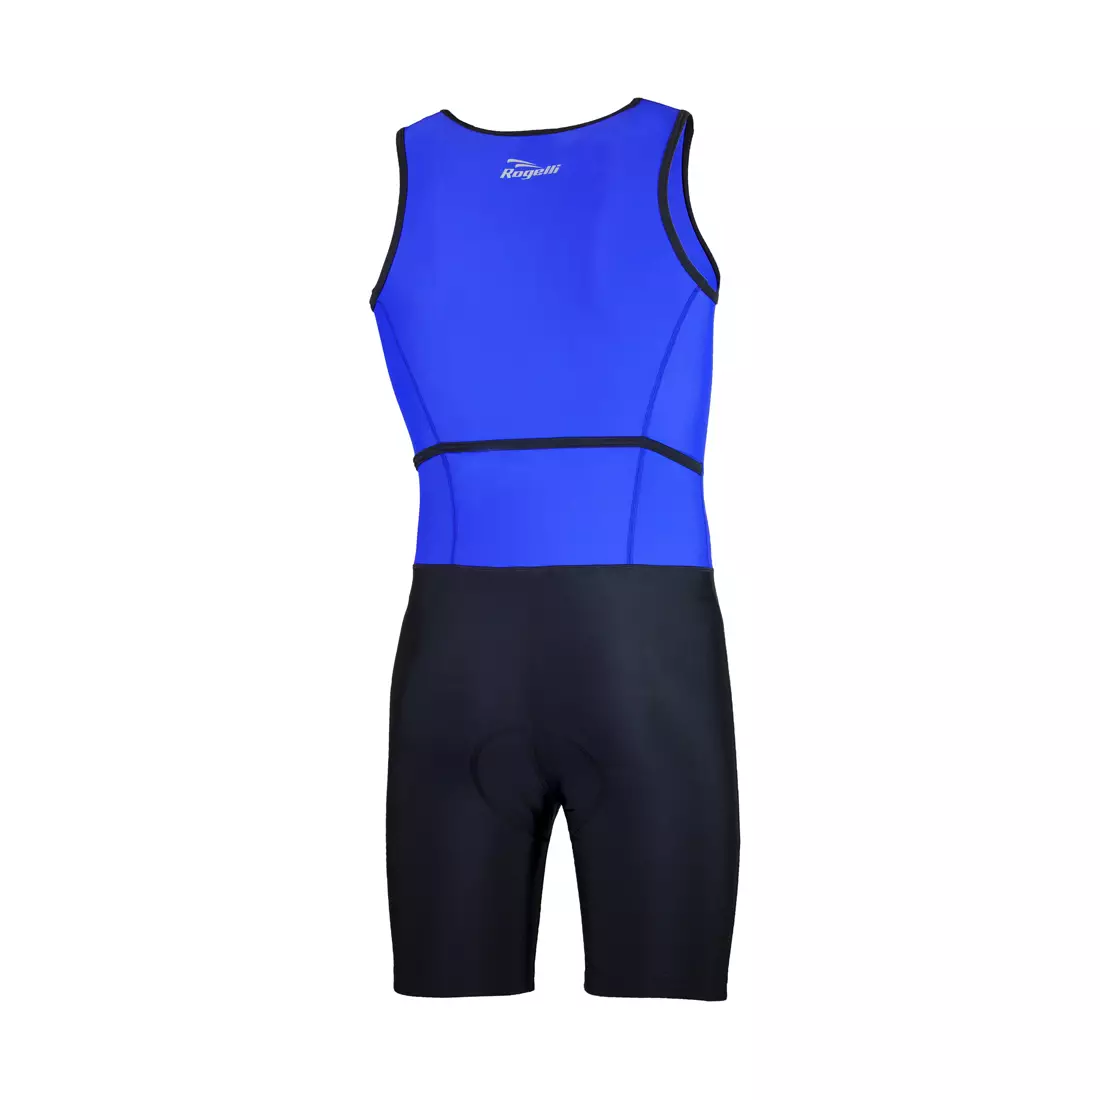 ROGELLI TRI FLORIDA 030.001 pánsky triatlonový oblek, modro-čierna